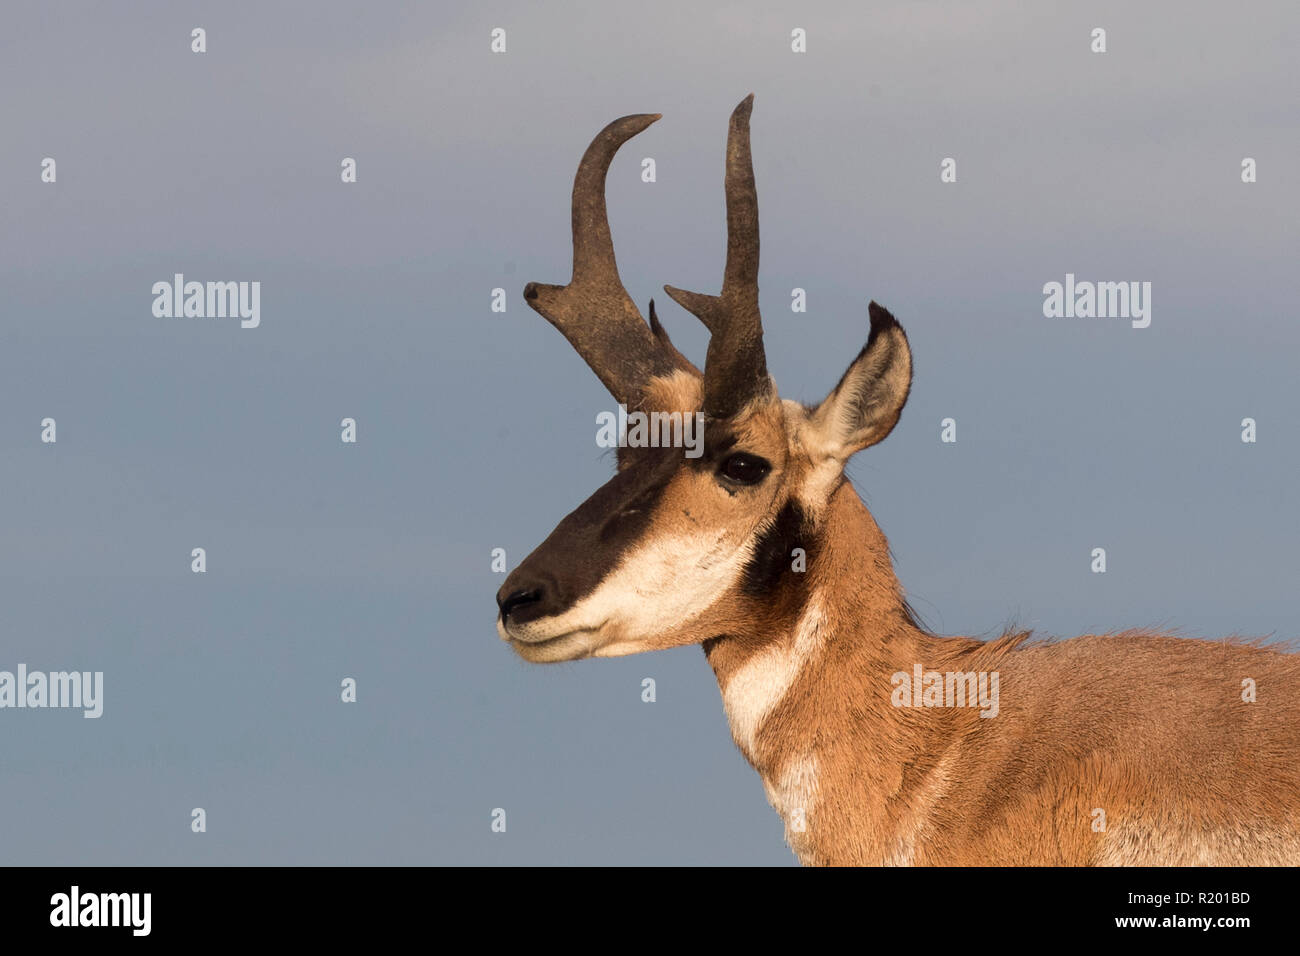 La Basse Californie (l'Antilope d'Antilocapa americana peninsularis). Portrait d'homme adulte. La population sauvage est estimée à 200. Mexique, Baja California Sur, Baja California desert National Park Banque D'Images